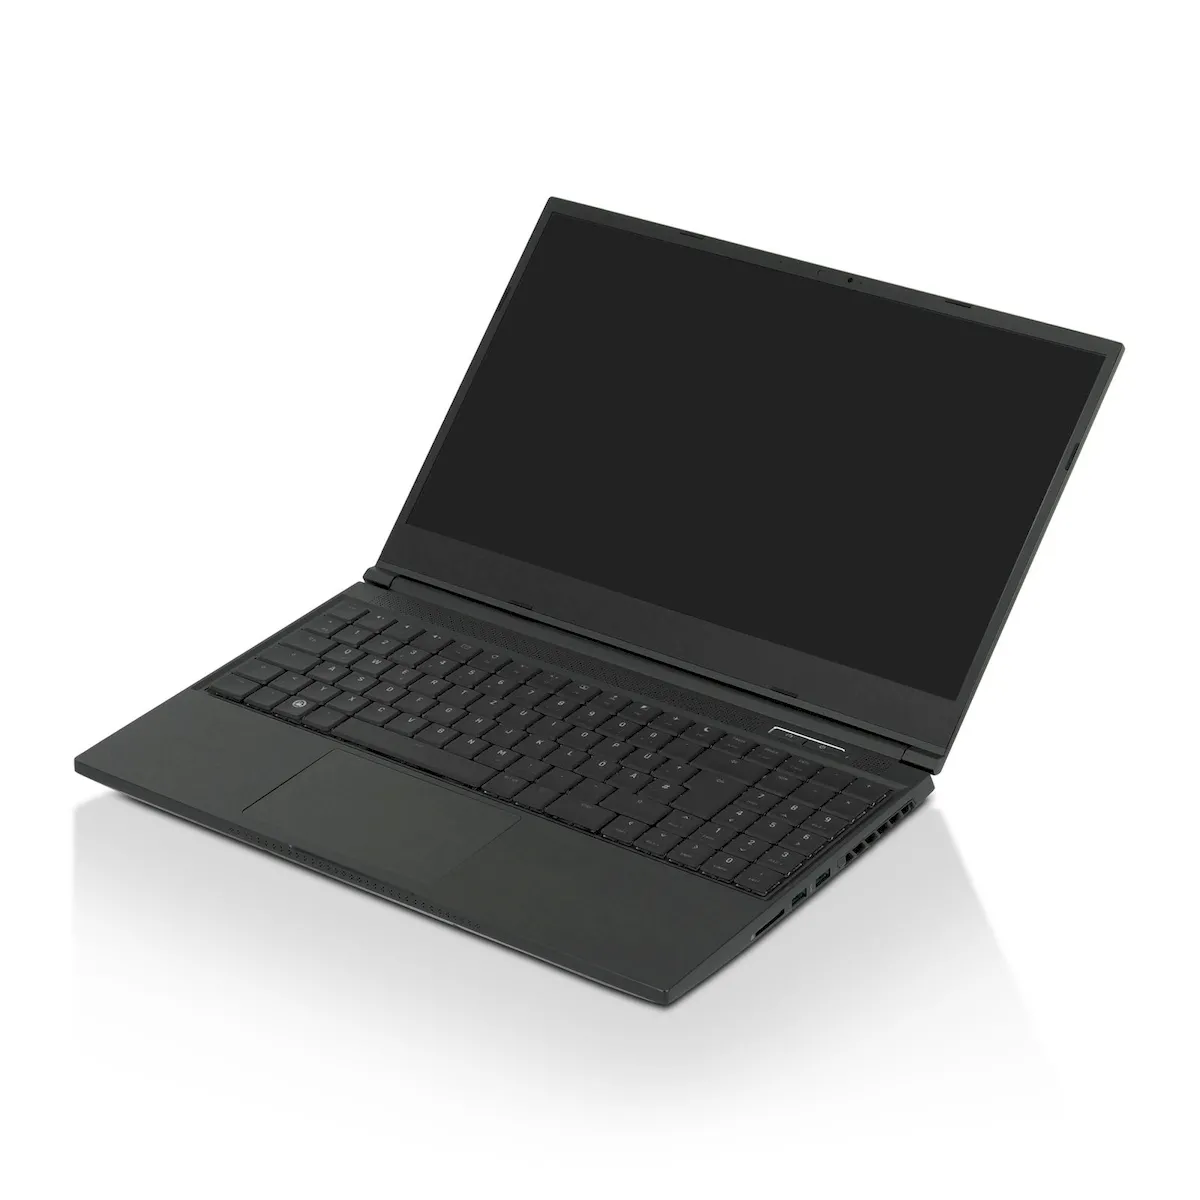 TUXEDO Stellaris 15, o primeiro laptop a vir com o Ubuntu 22.04 LTS pré-instalado